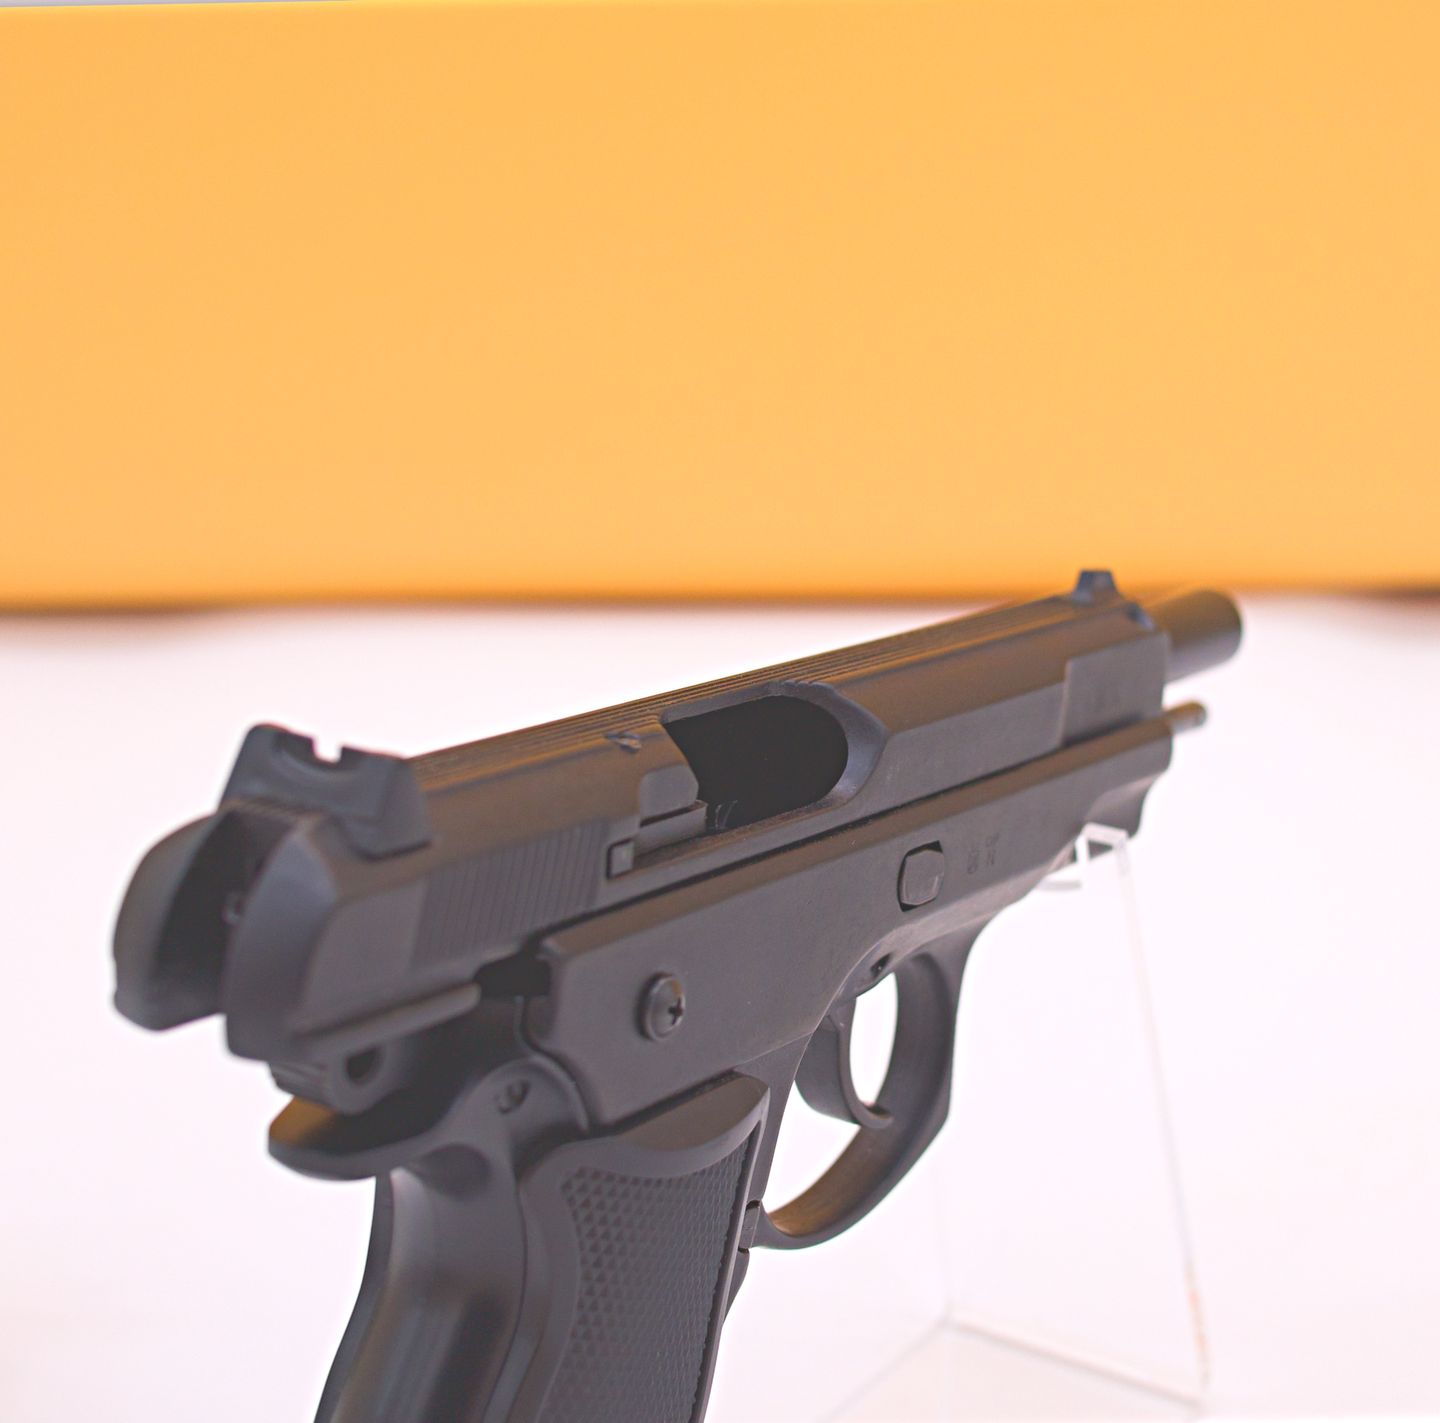 Signal-und Selbstverteidigungspistole - Alarmpistole und Verteidigungswaffe Kimar 75 9mm PAK – im Stil der CZ 75